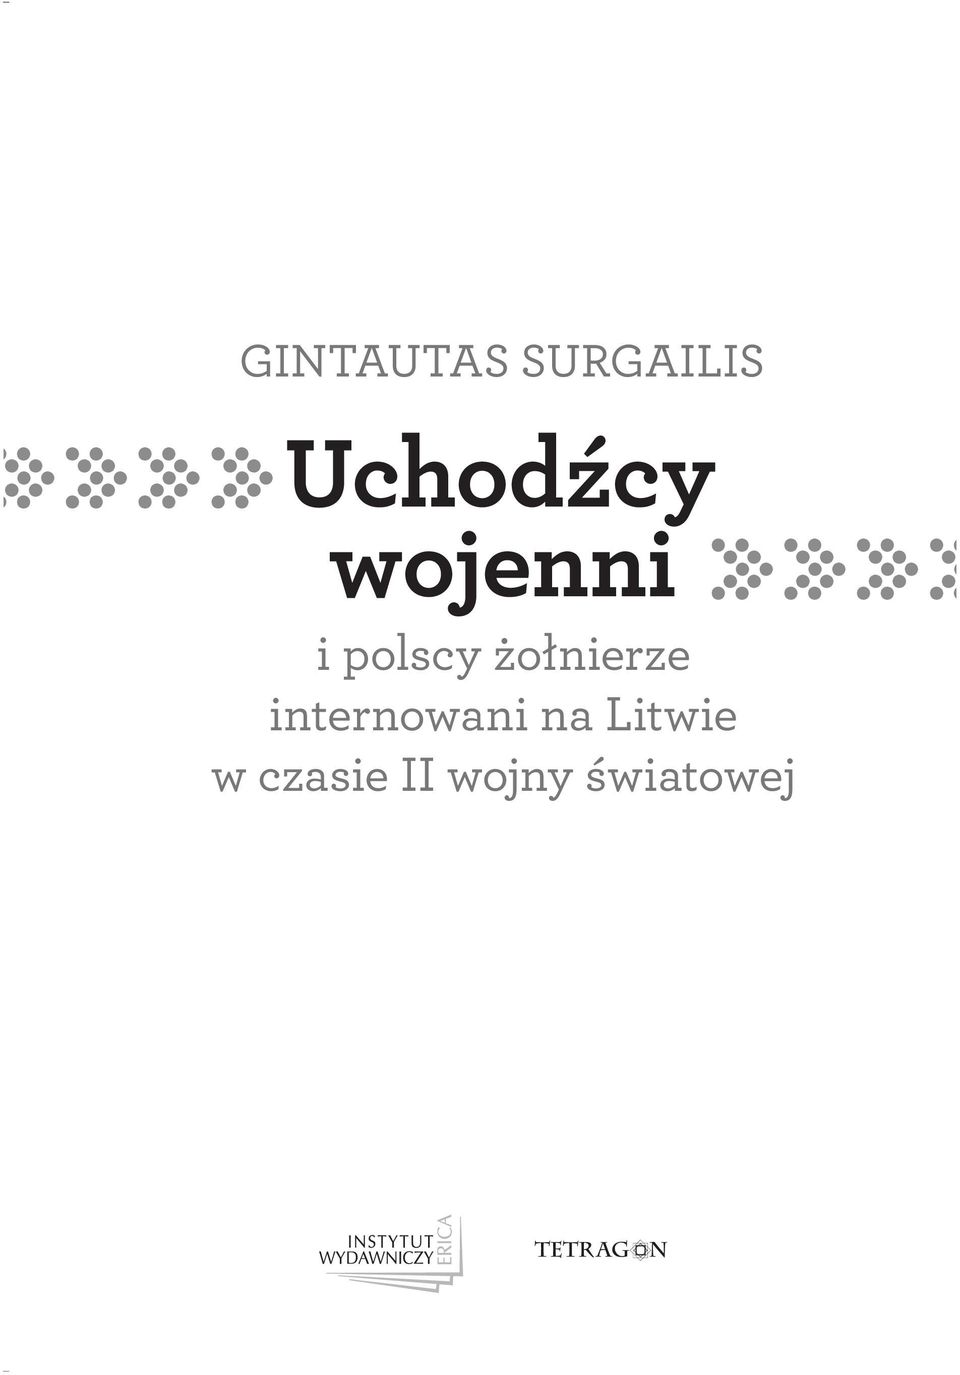 polscy żołnierze internowani